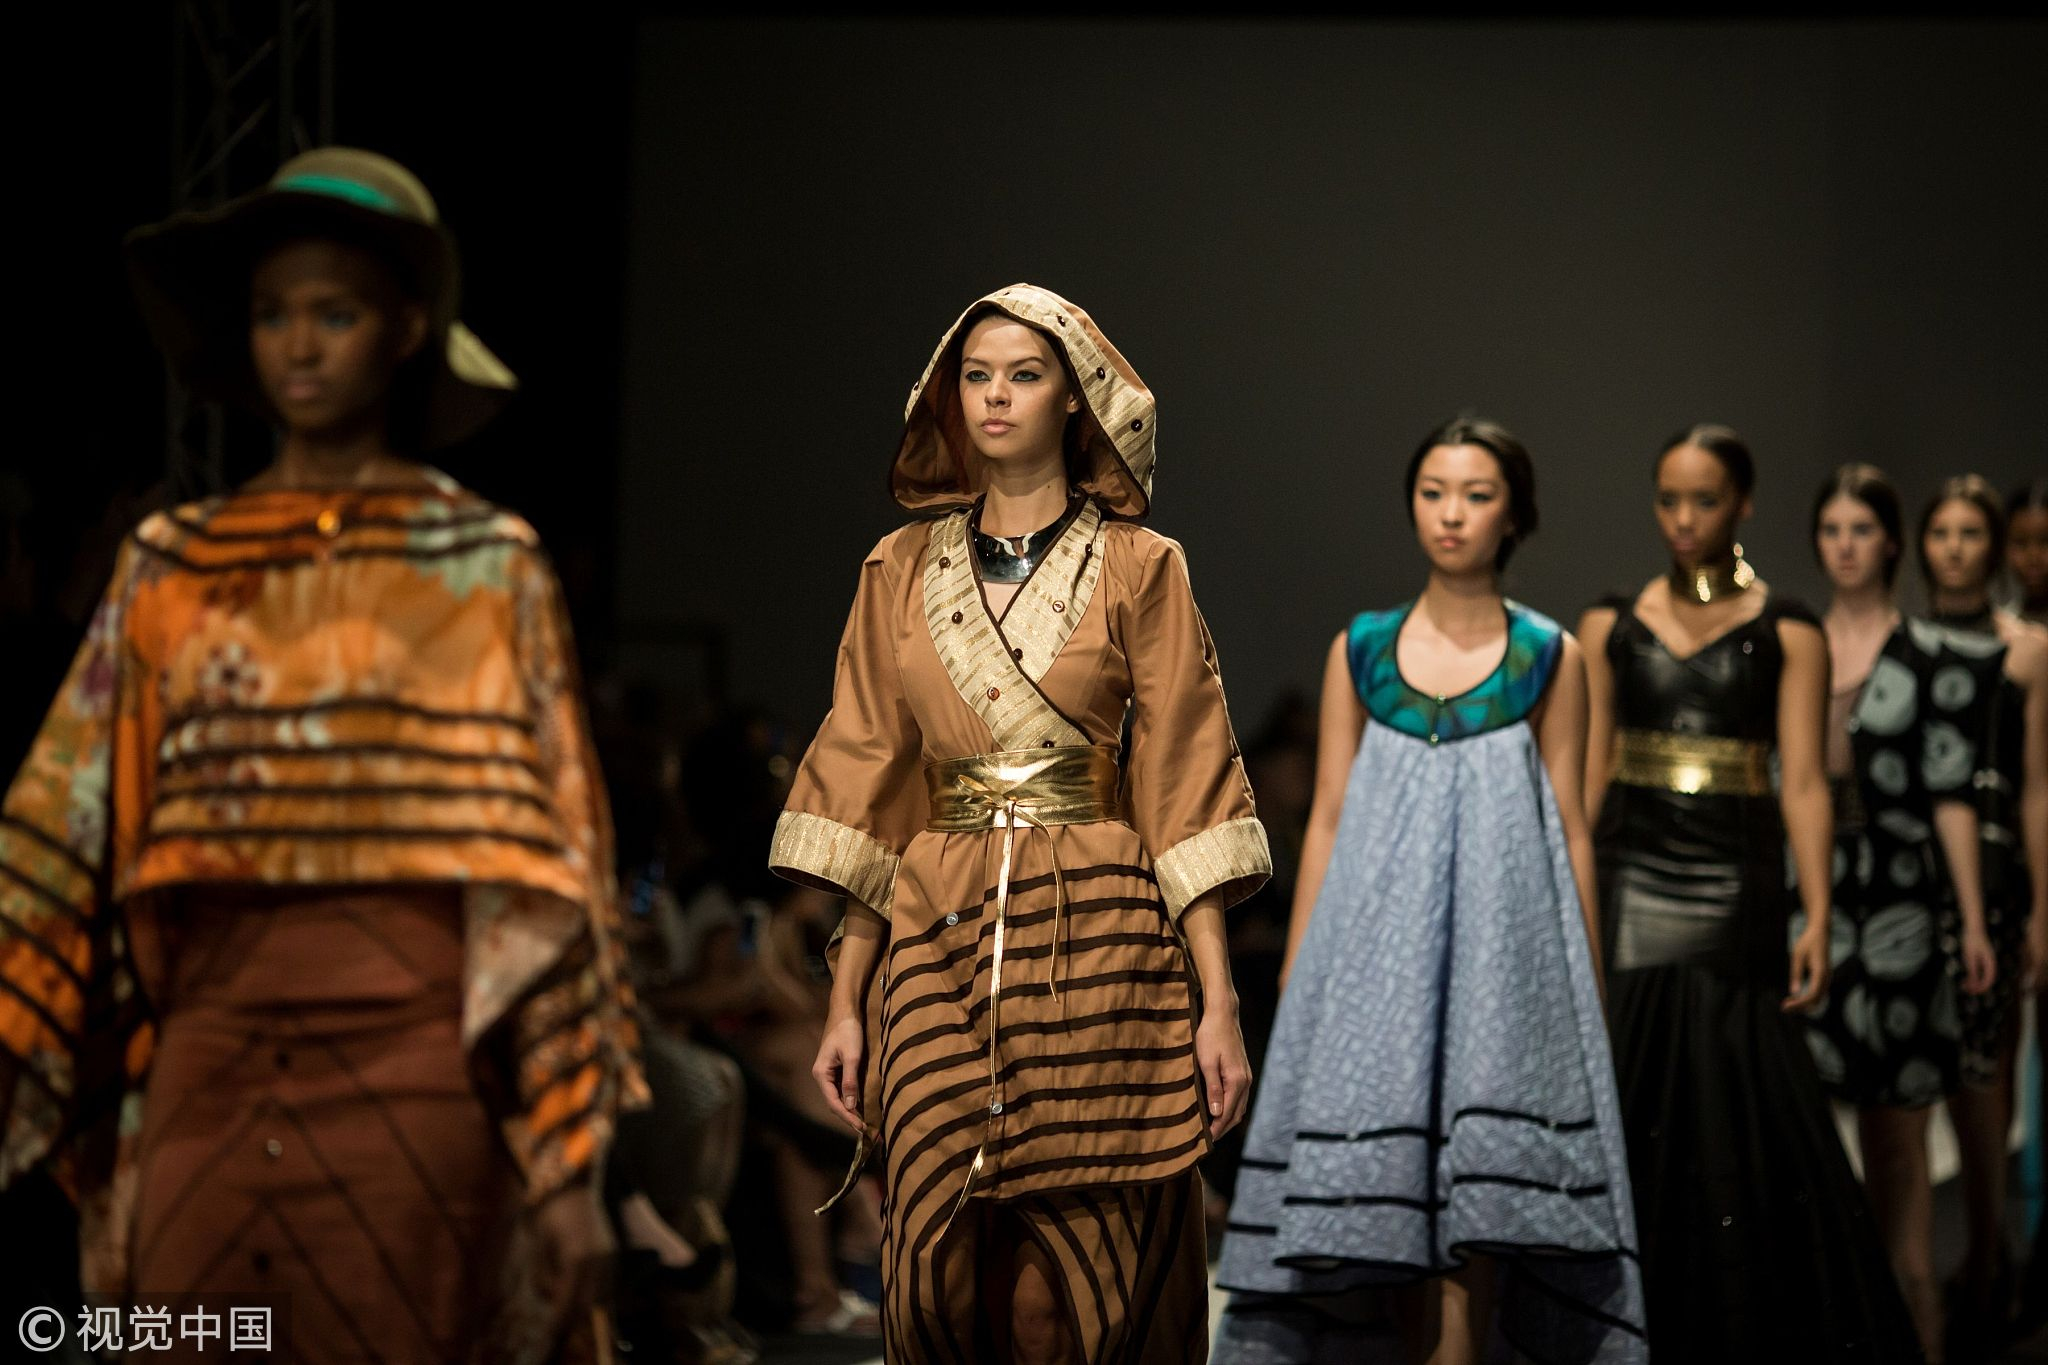 Runway safari: Style Africa fashions the world - CGTN